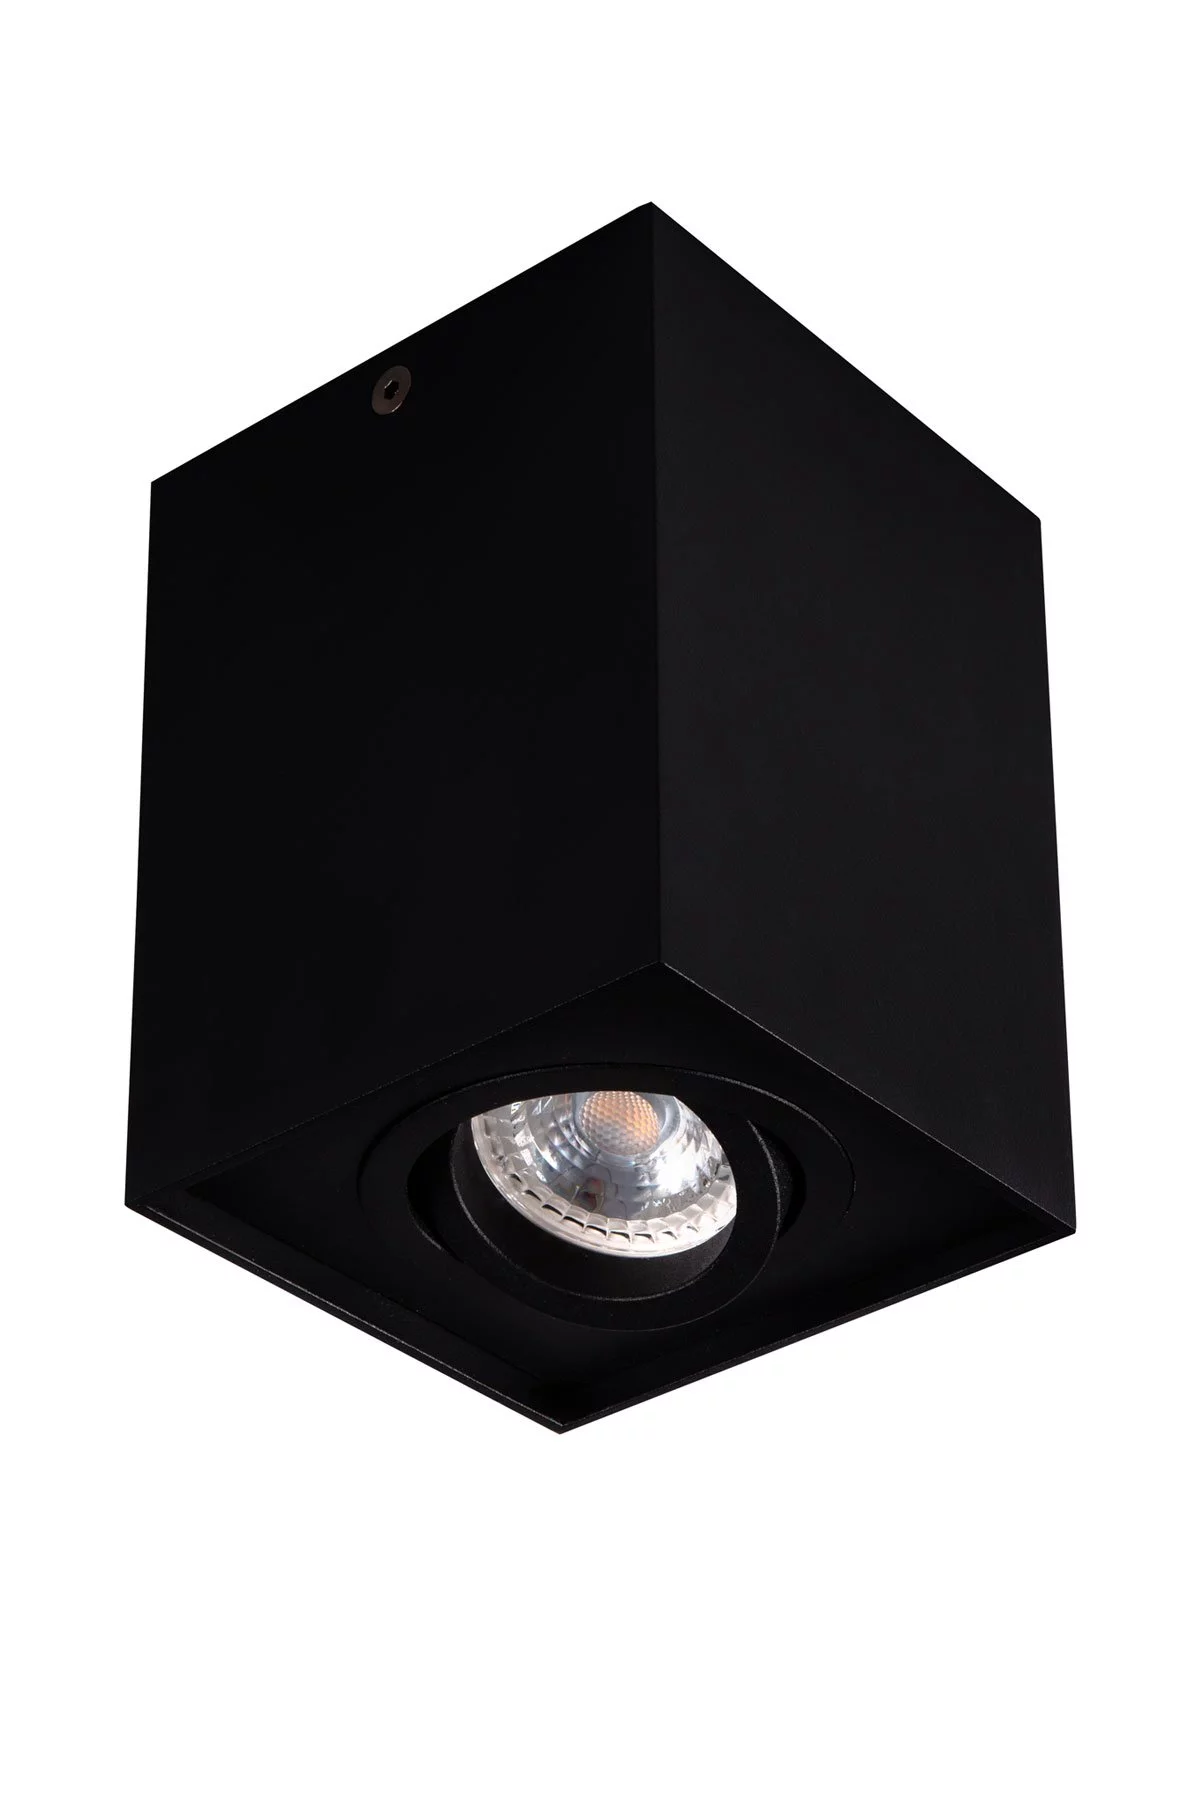   
                        Точечный светильник KANLUX  (Польша) 91426    
                         в стиле Хай-тек.  
                        Тип источника света: светодиодная лампа, сменная.                         Форма: Параллелепипед.                                                                          фото 1